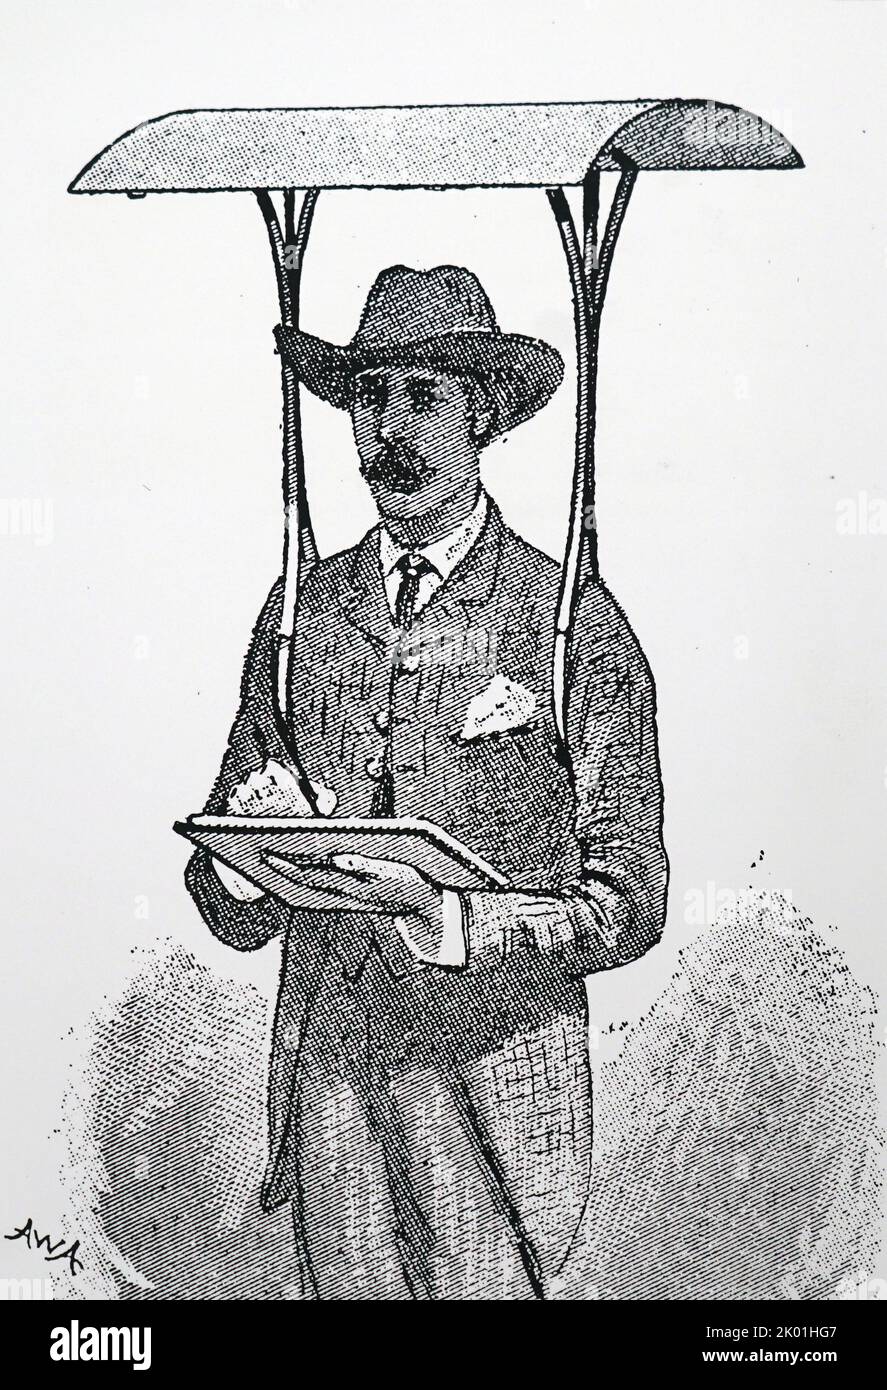 Carta e bambù ombrellone per l'uso da parte di soldati e osservatori militari in climi caldi, in particolare in Sudan. Dal Cassell's Family Magazine, Londra, 1885. Foto Stock